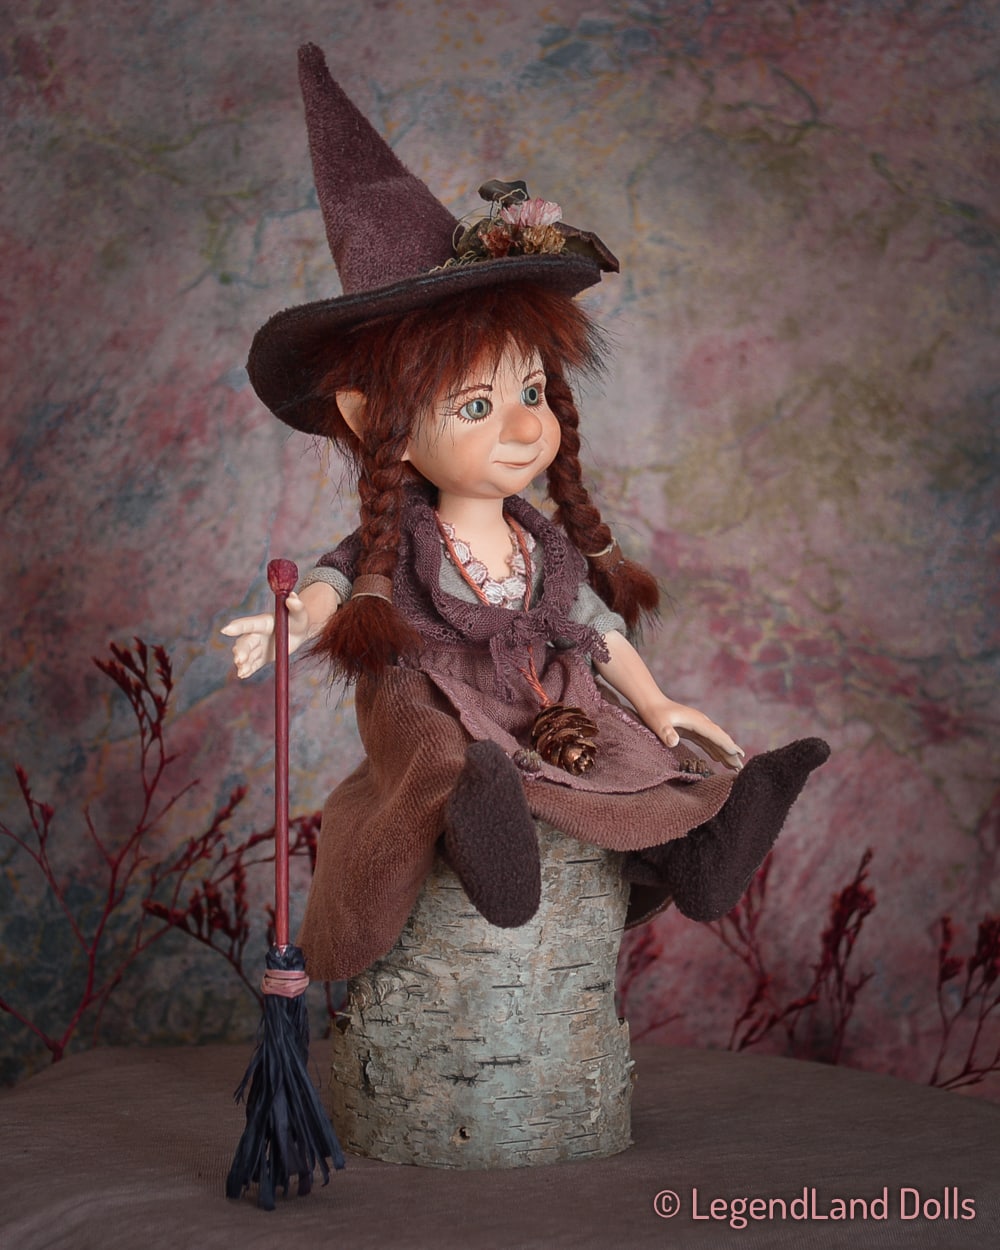 Boszorkány figura: Amelia a kis boszorkány